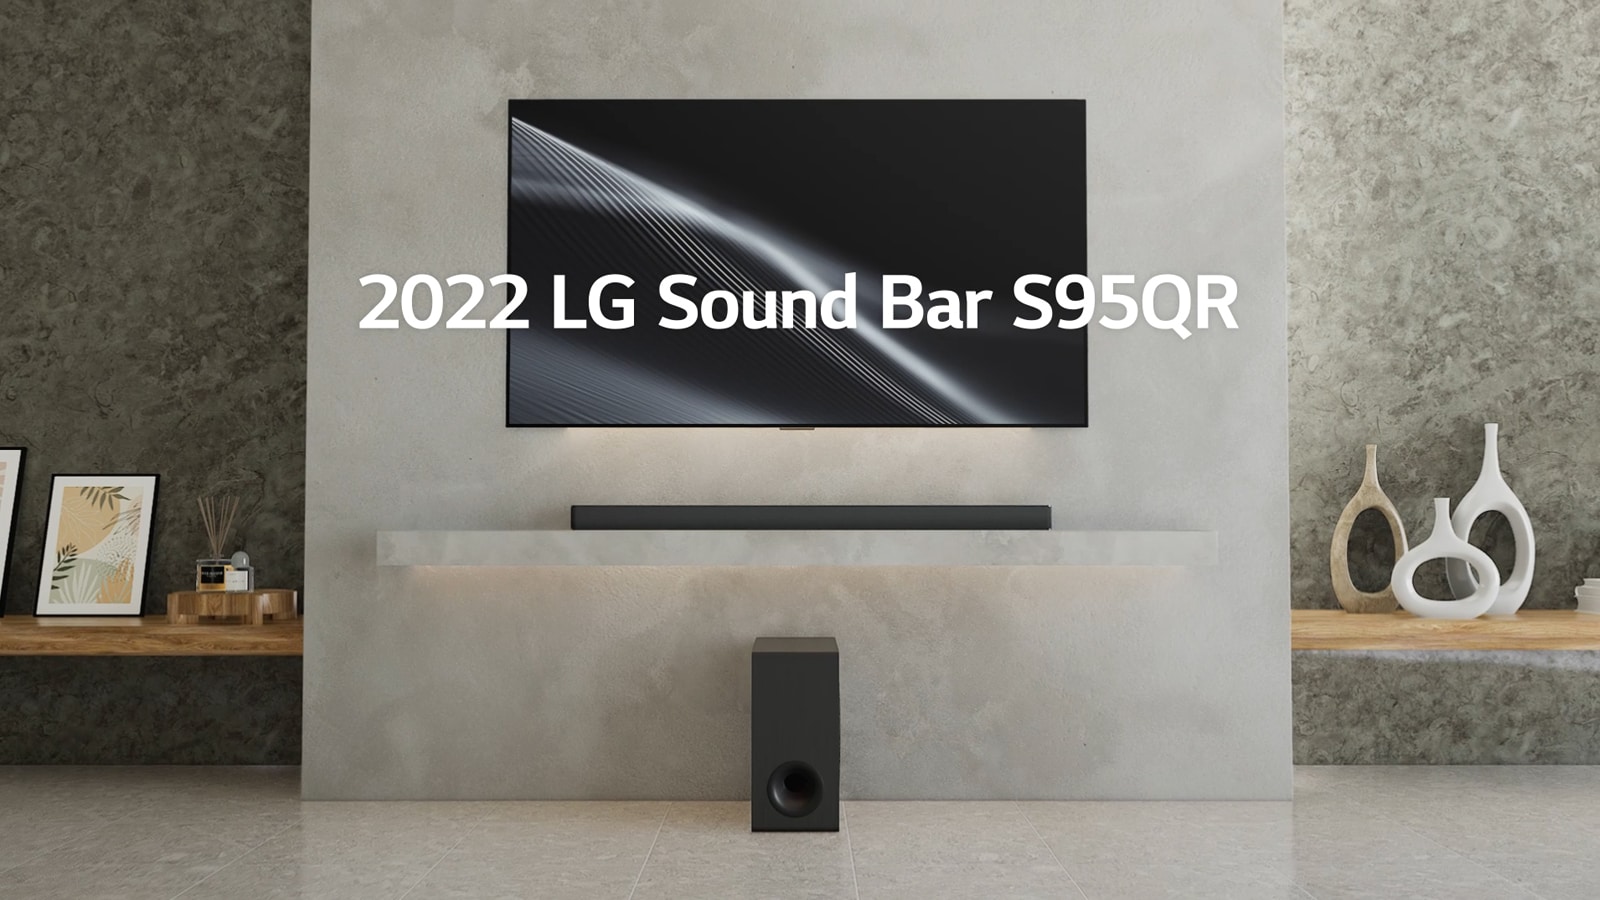 LG S95QR Review: The Best Soundbar for LG TV's? 